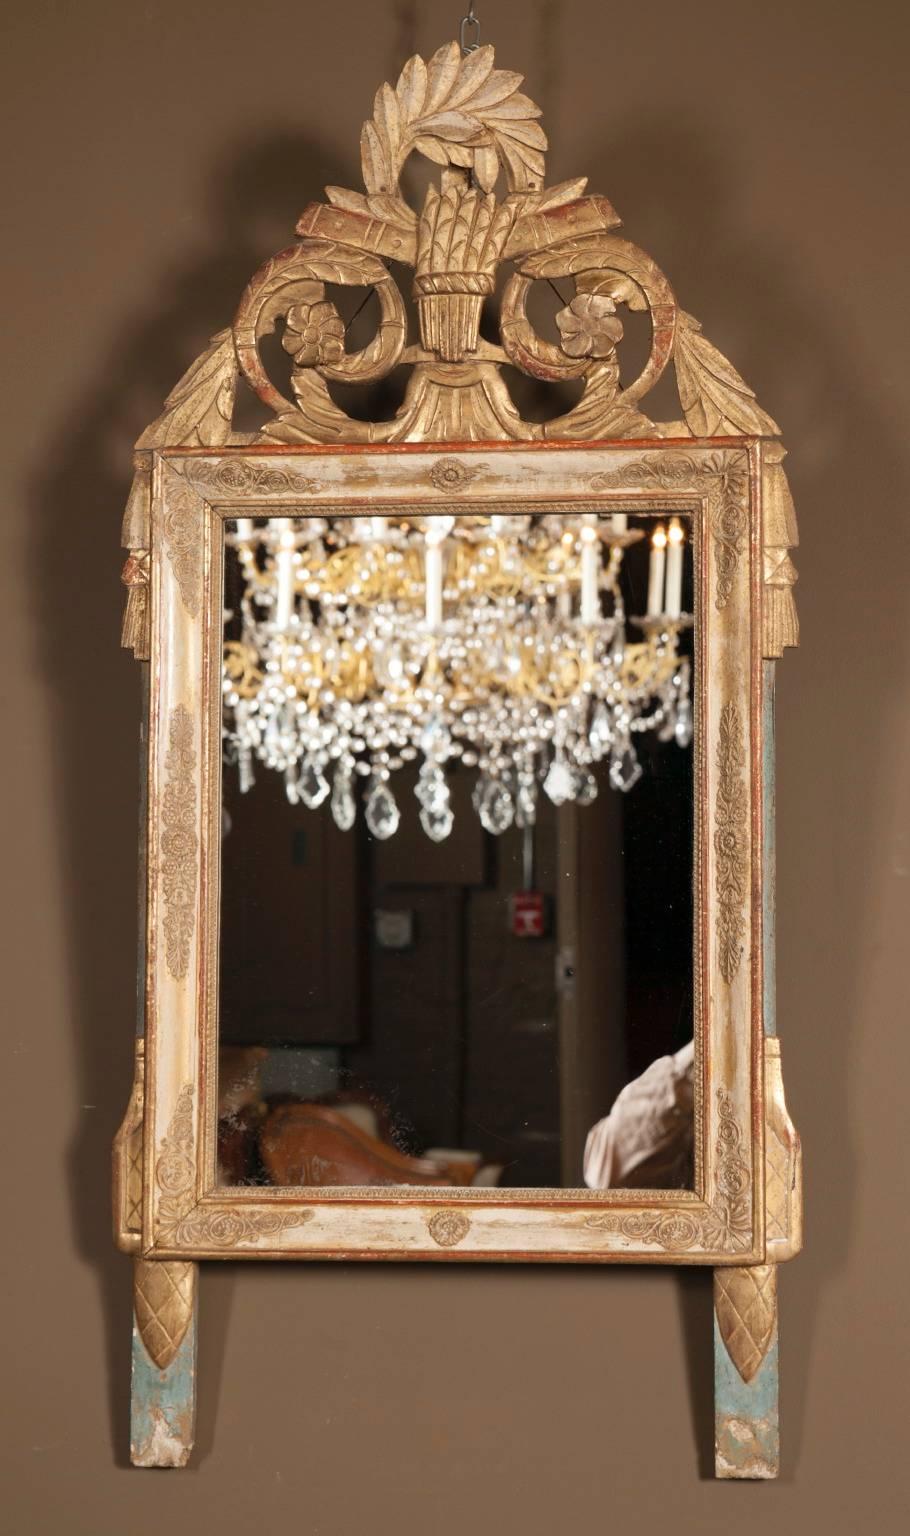 Magnifiquement fabriqué à la main au début du XIXe siècle, ce miroir ancien est composé de feuilles d'or posées sur une belle série de sculptures dans un cadre en bois. Le cadre du miroir est orné de divers tourbillons et motifs complexes. Le bas du